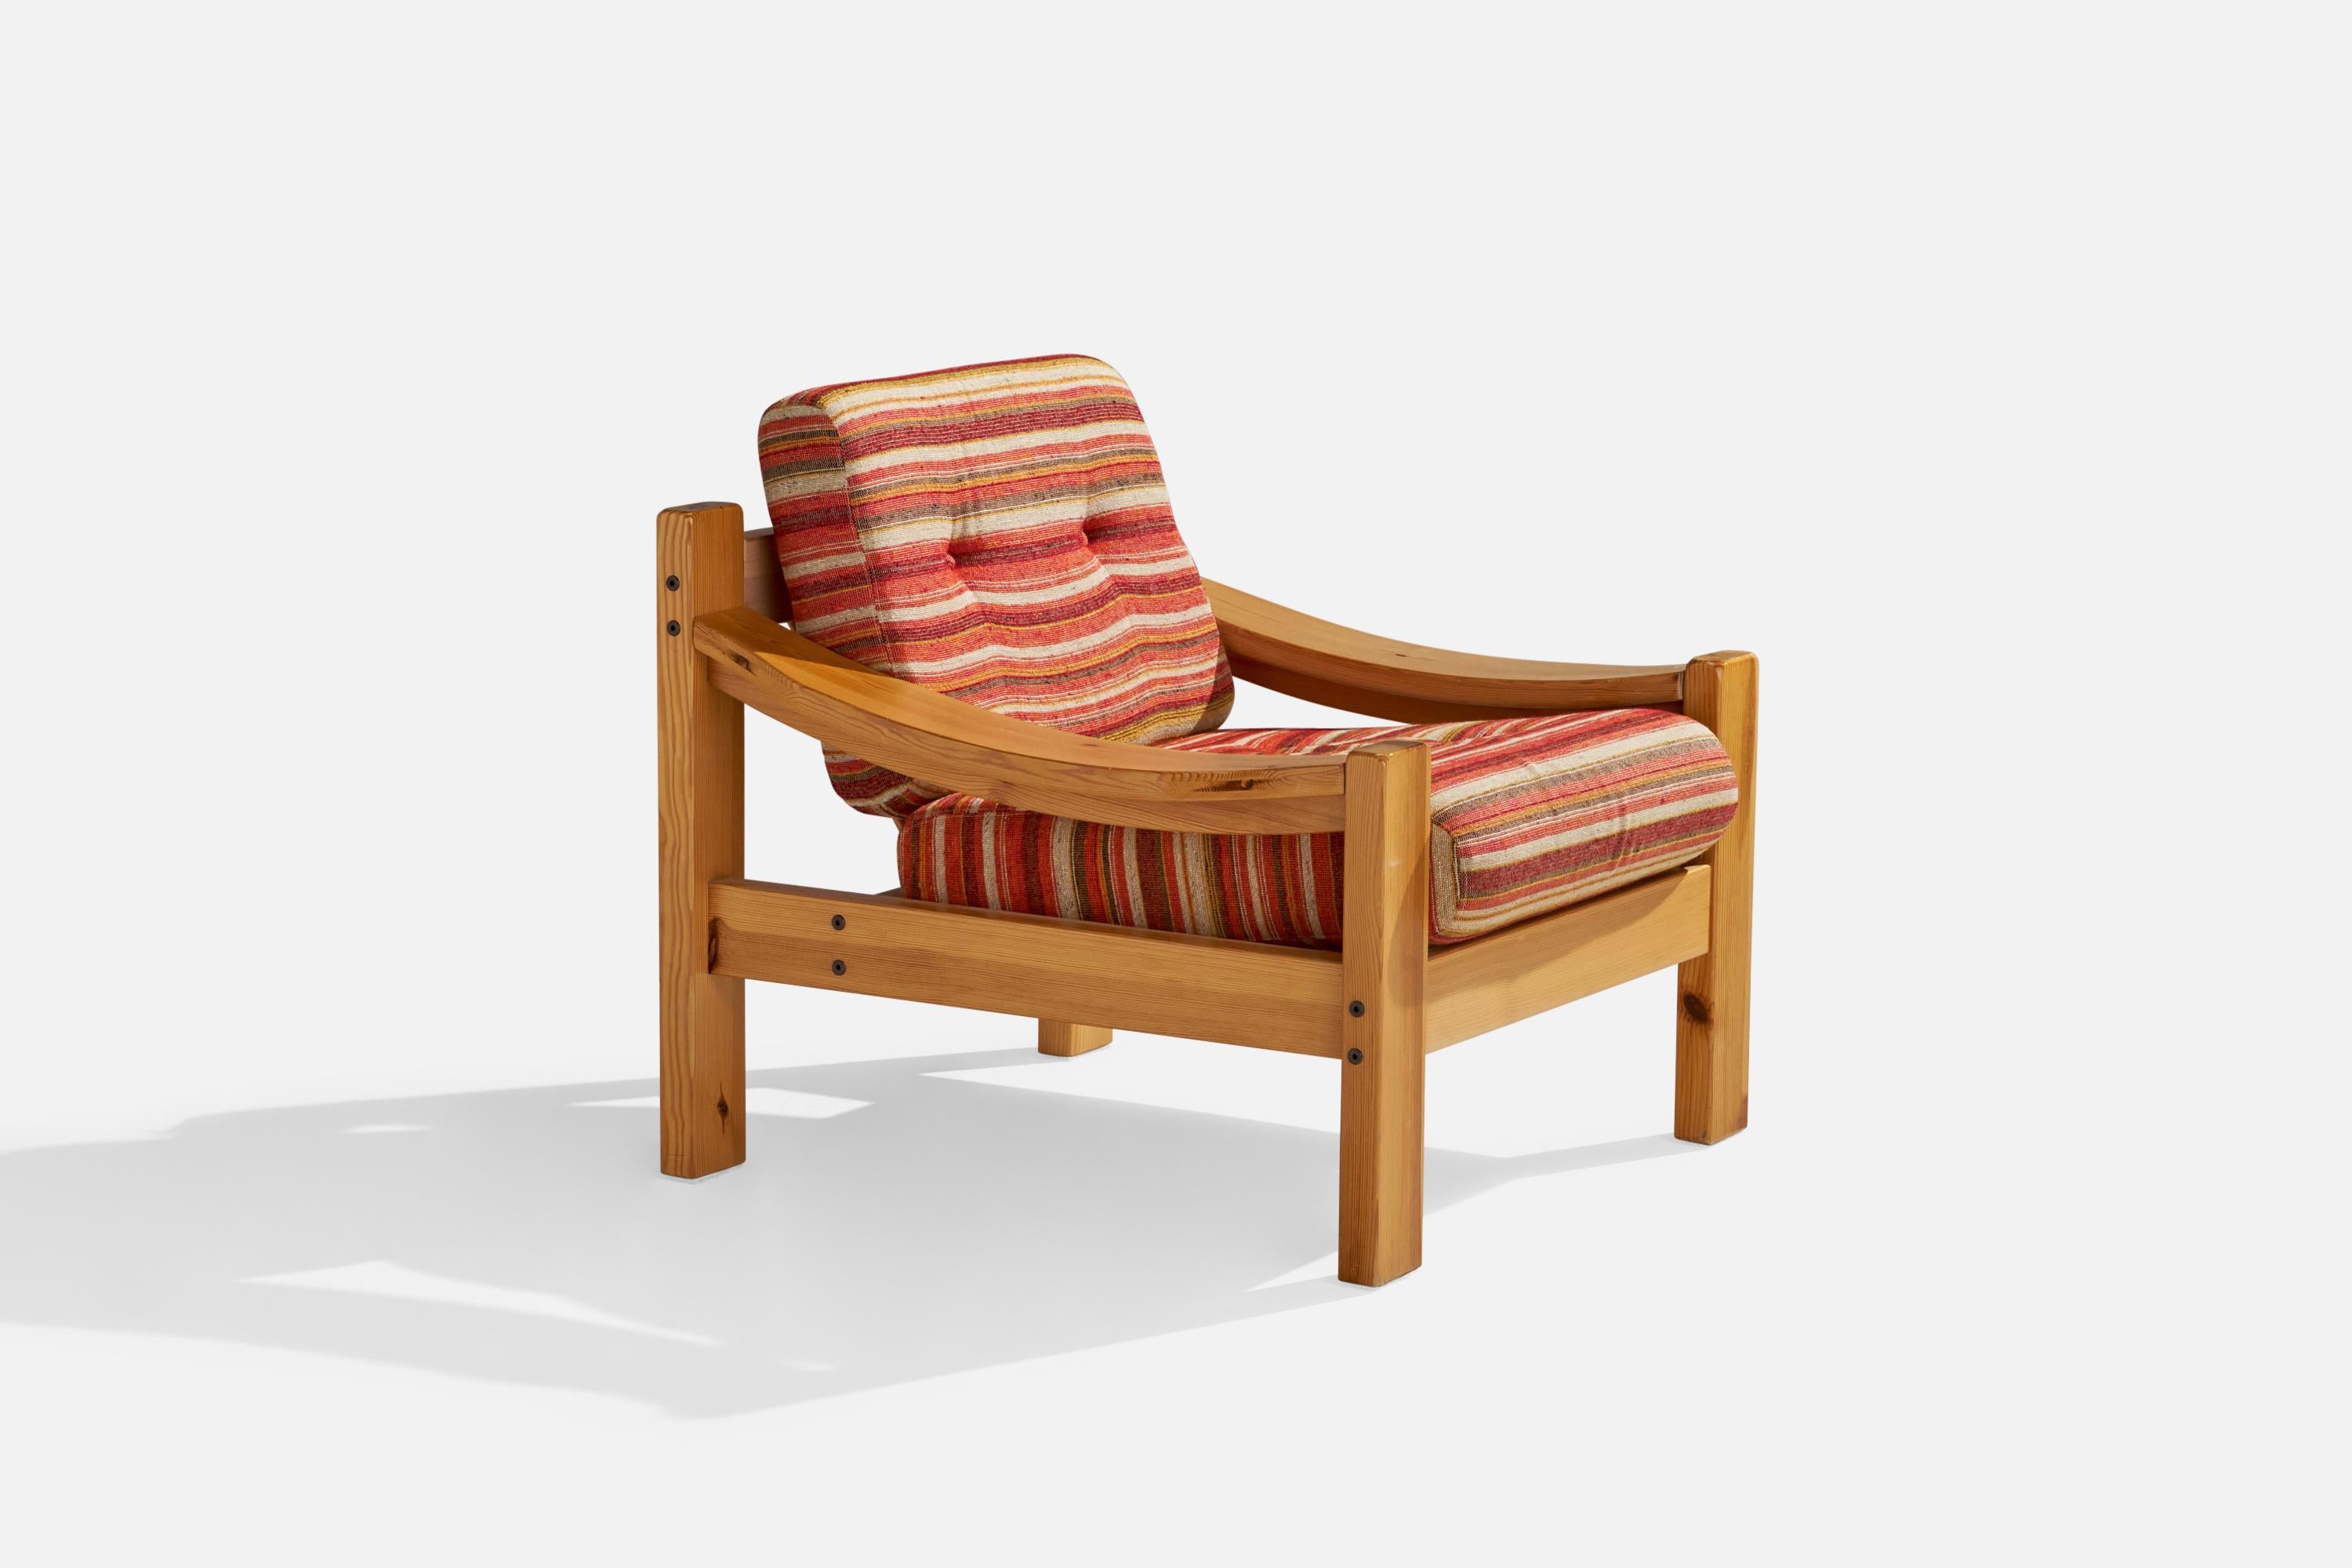 Chaise de salon en pin et tissu rouge, conçue et produite en Suède, années 1970.

hauteur du siège 17.33